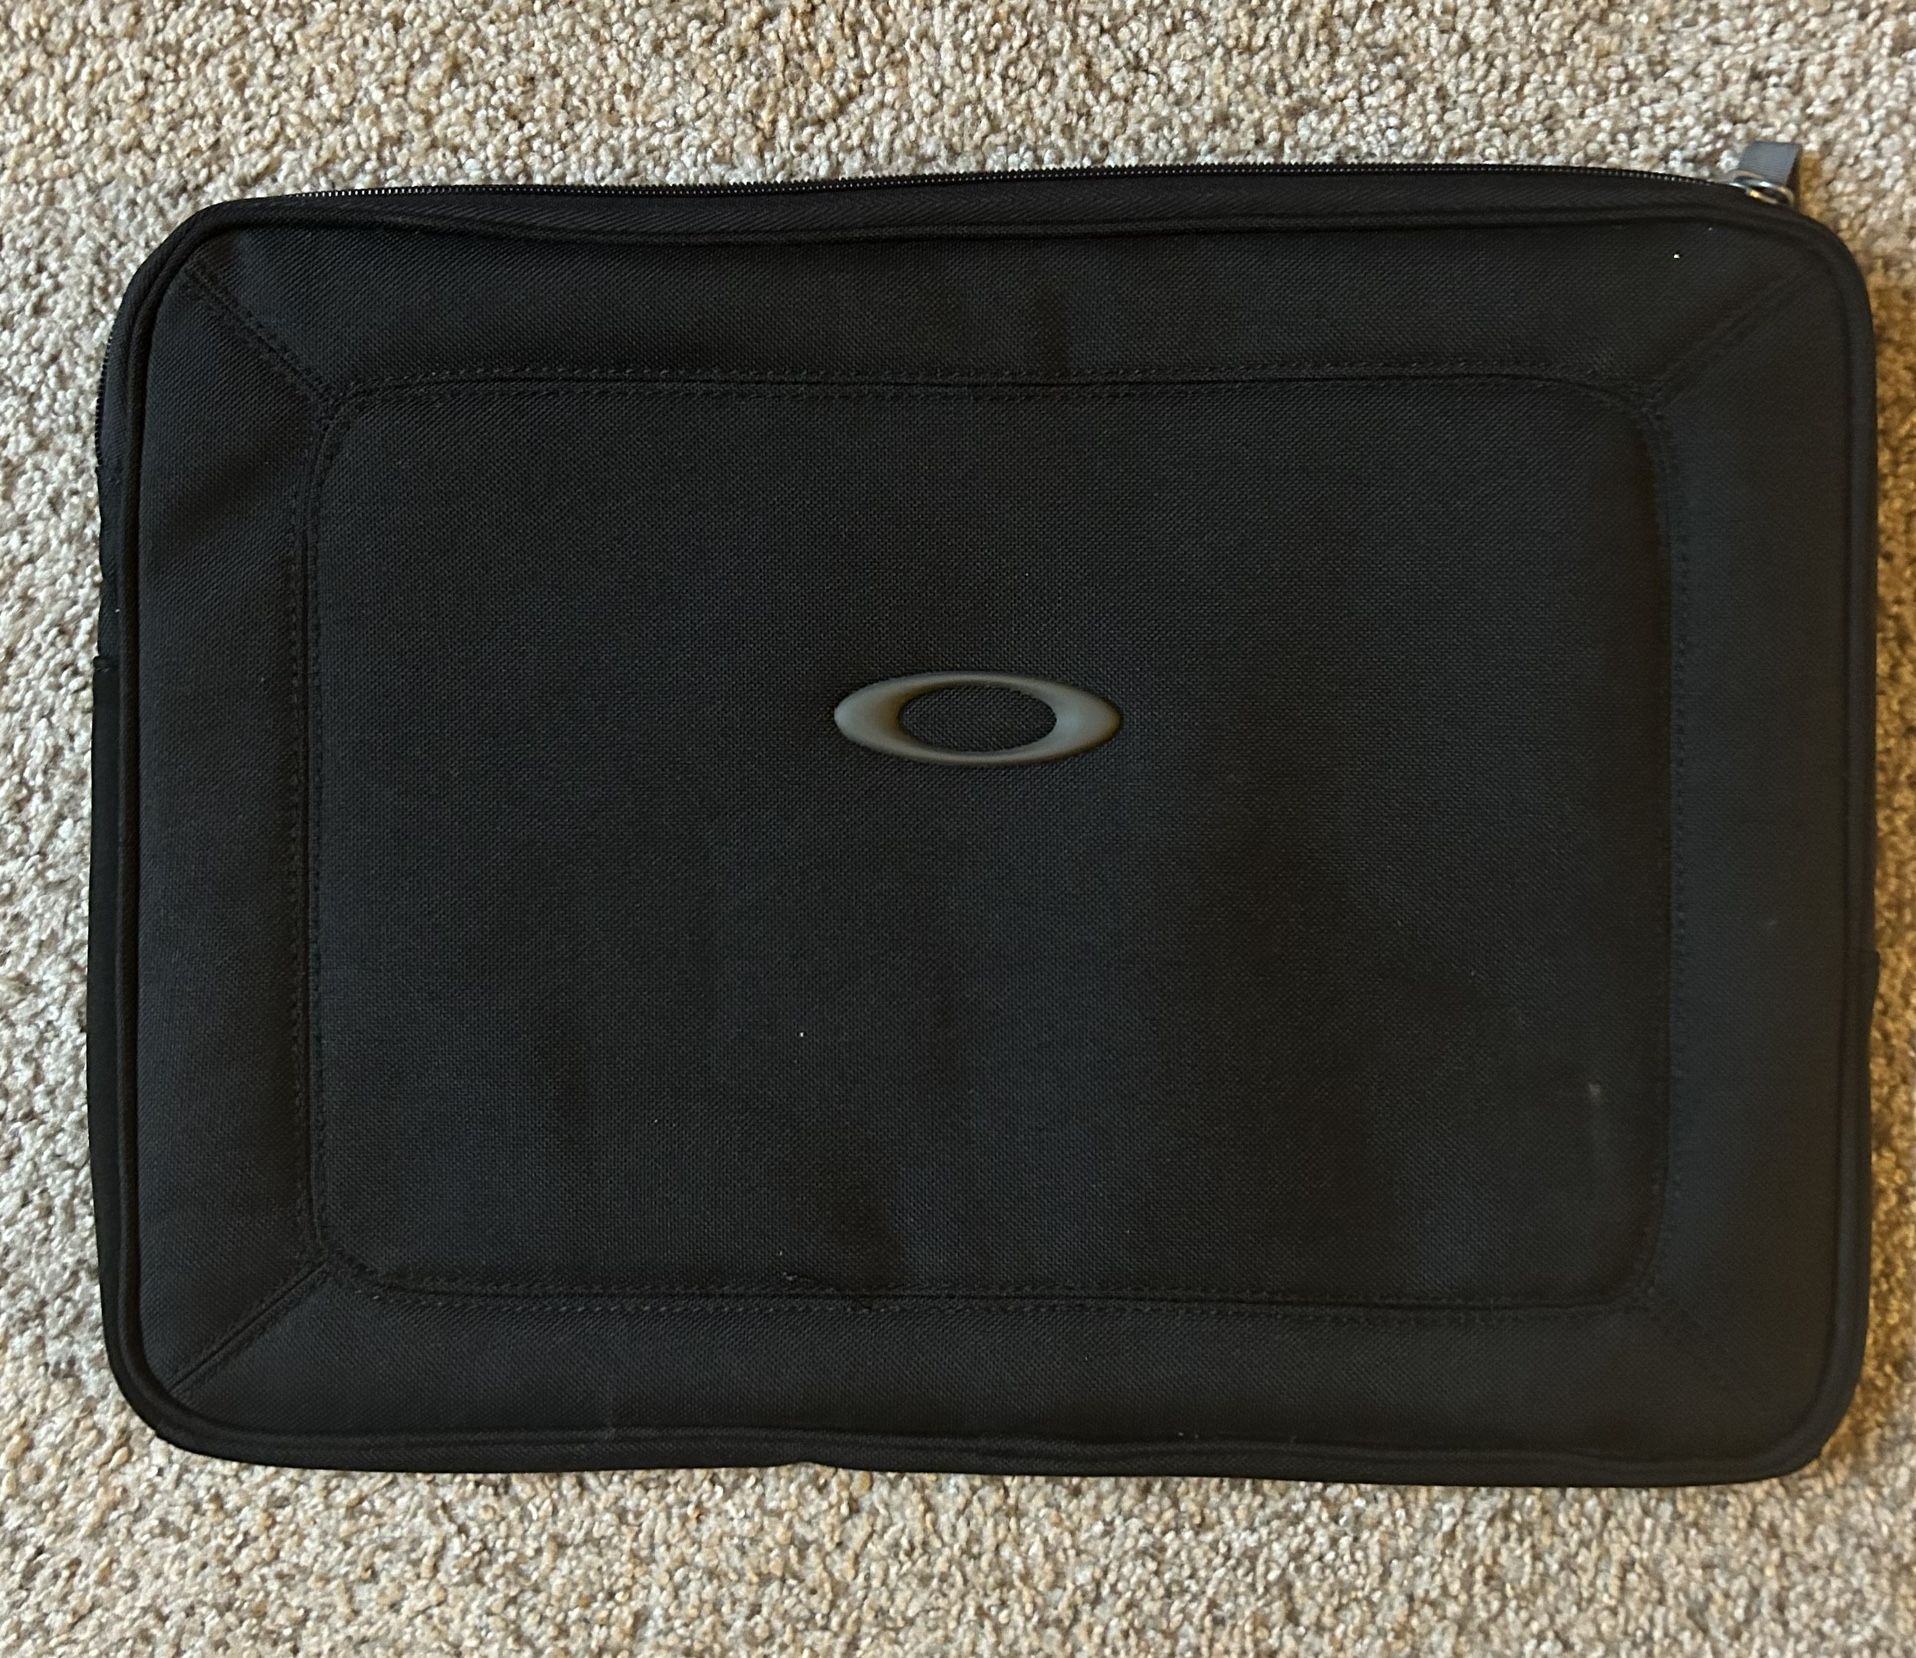 15in Oakley Laptop Case